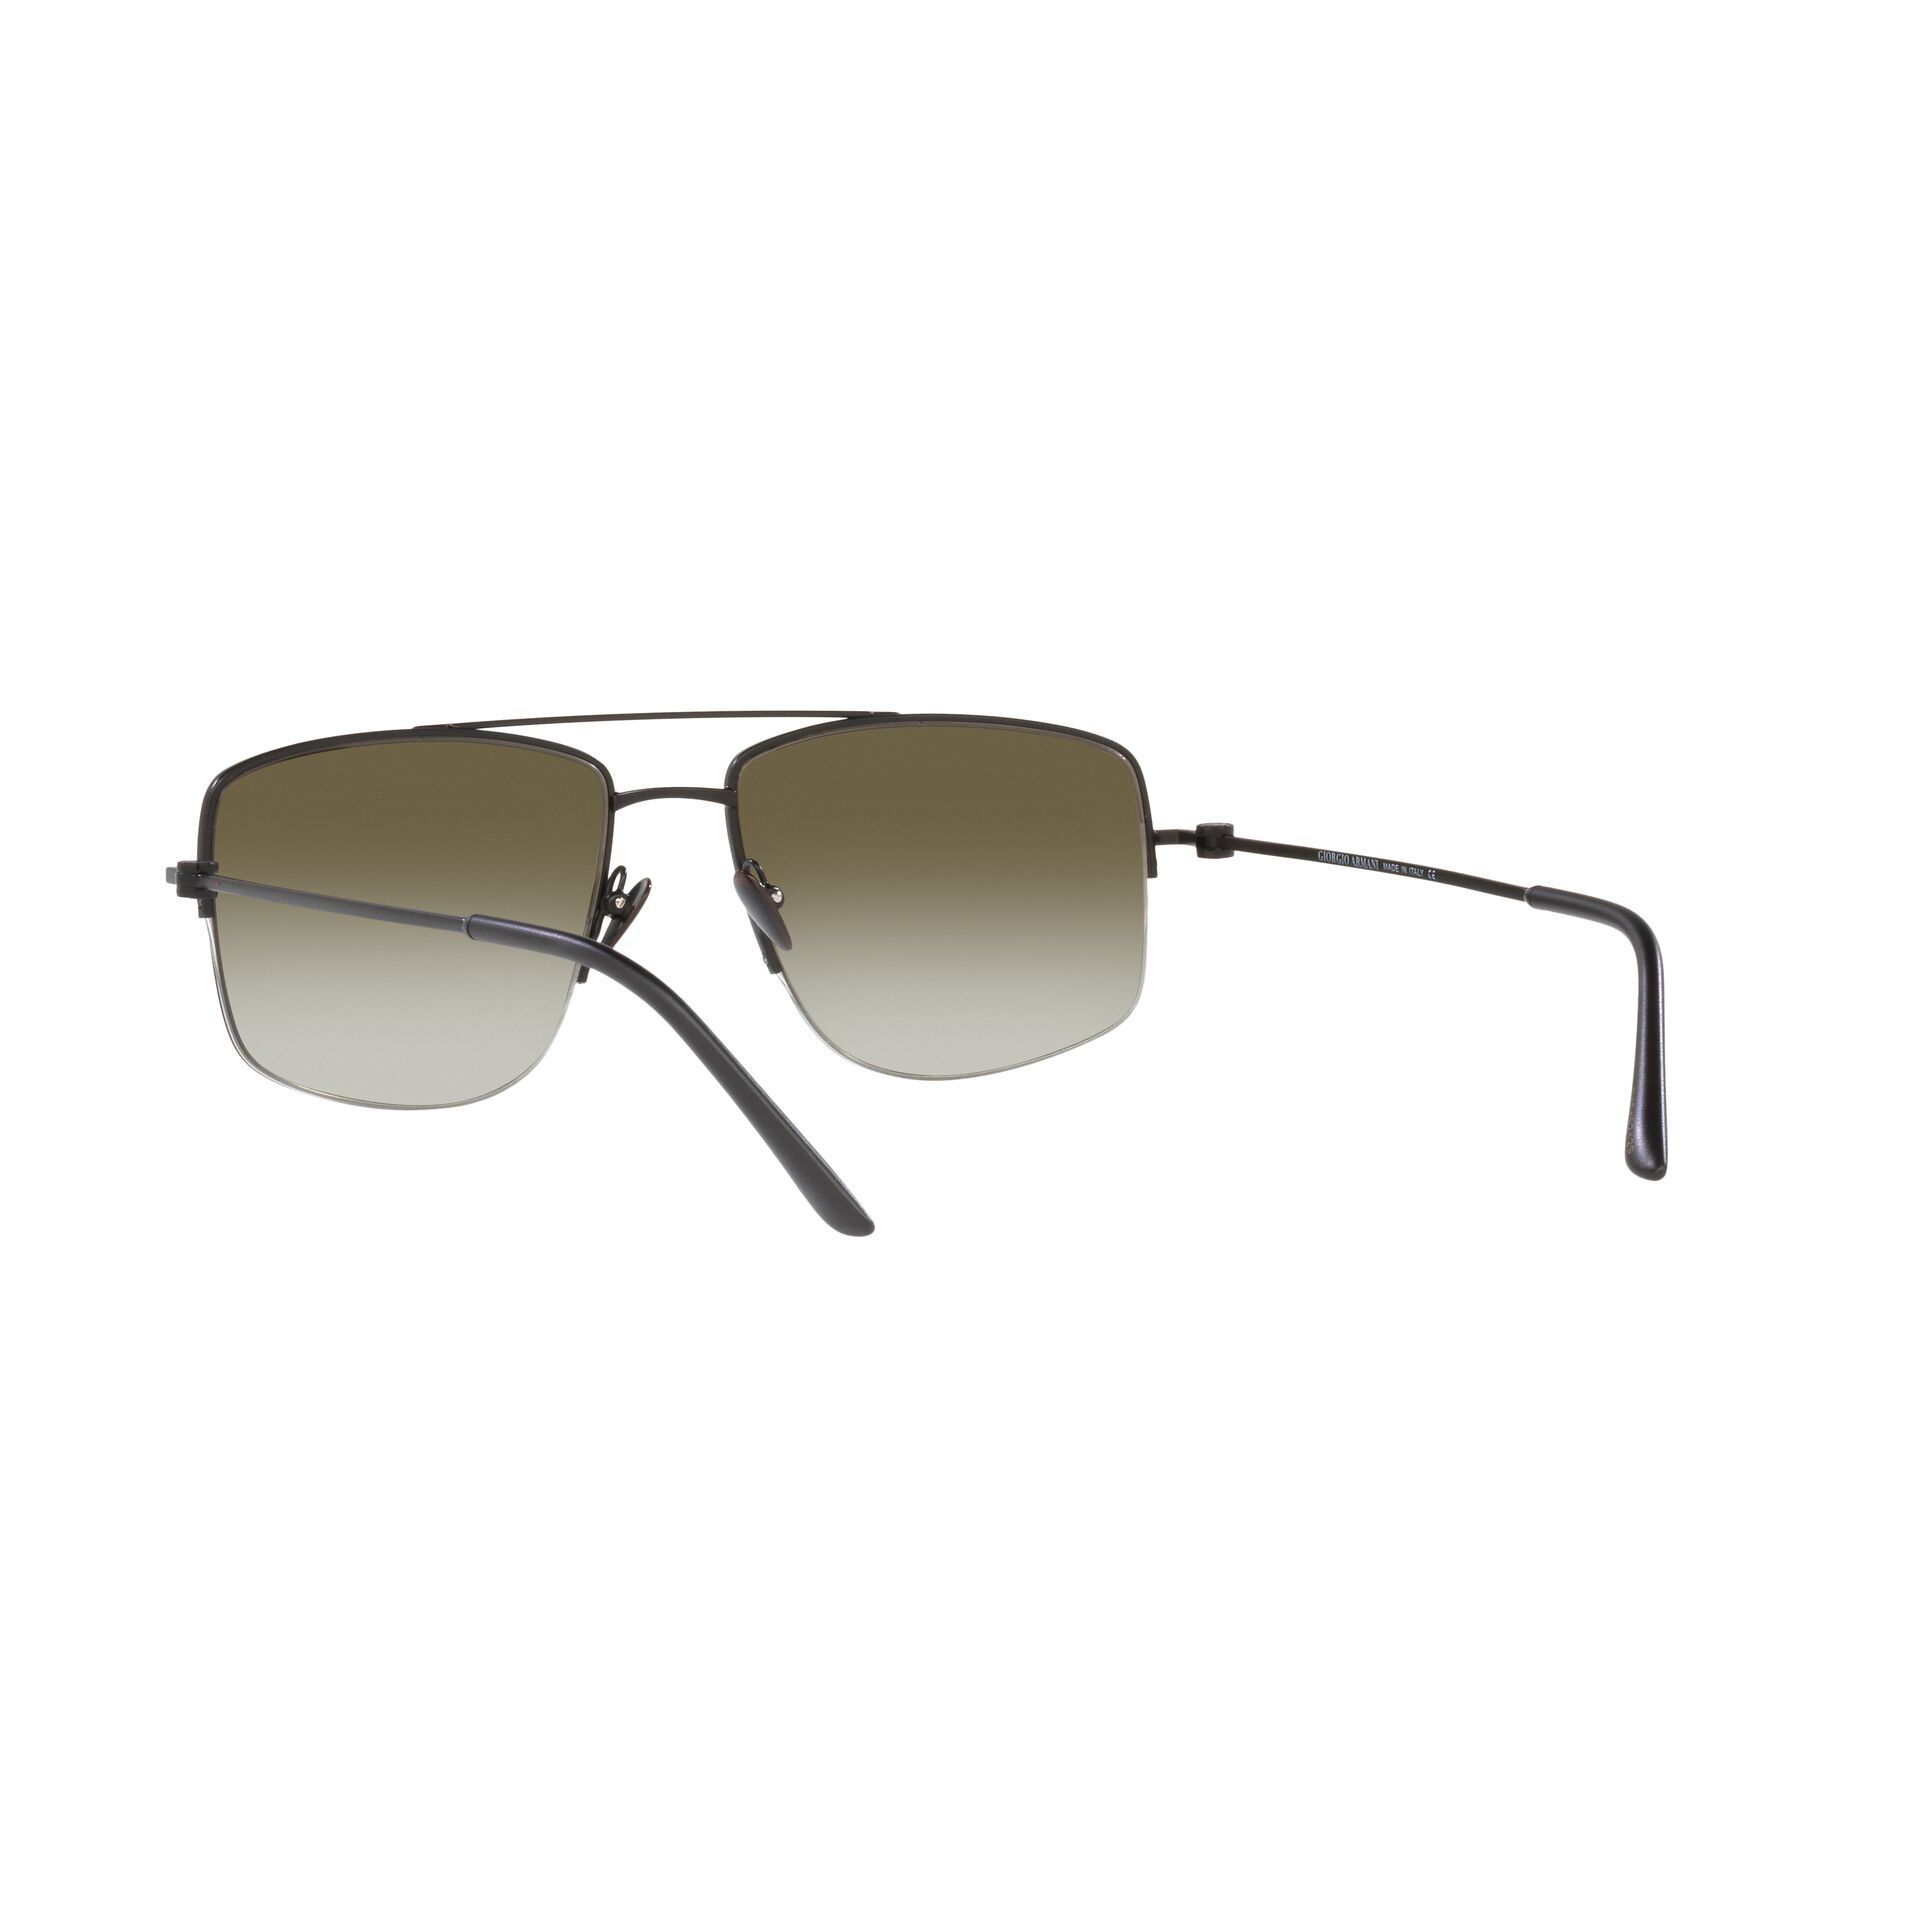 Learn more about us Giorgio Men's Sunglasses Sunglasses AR6137 57 ...